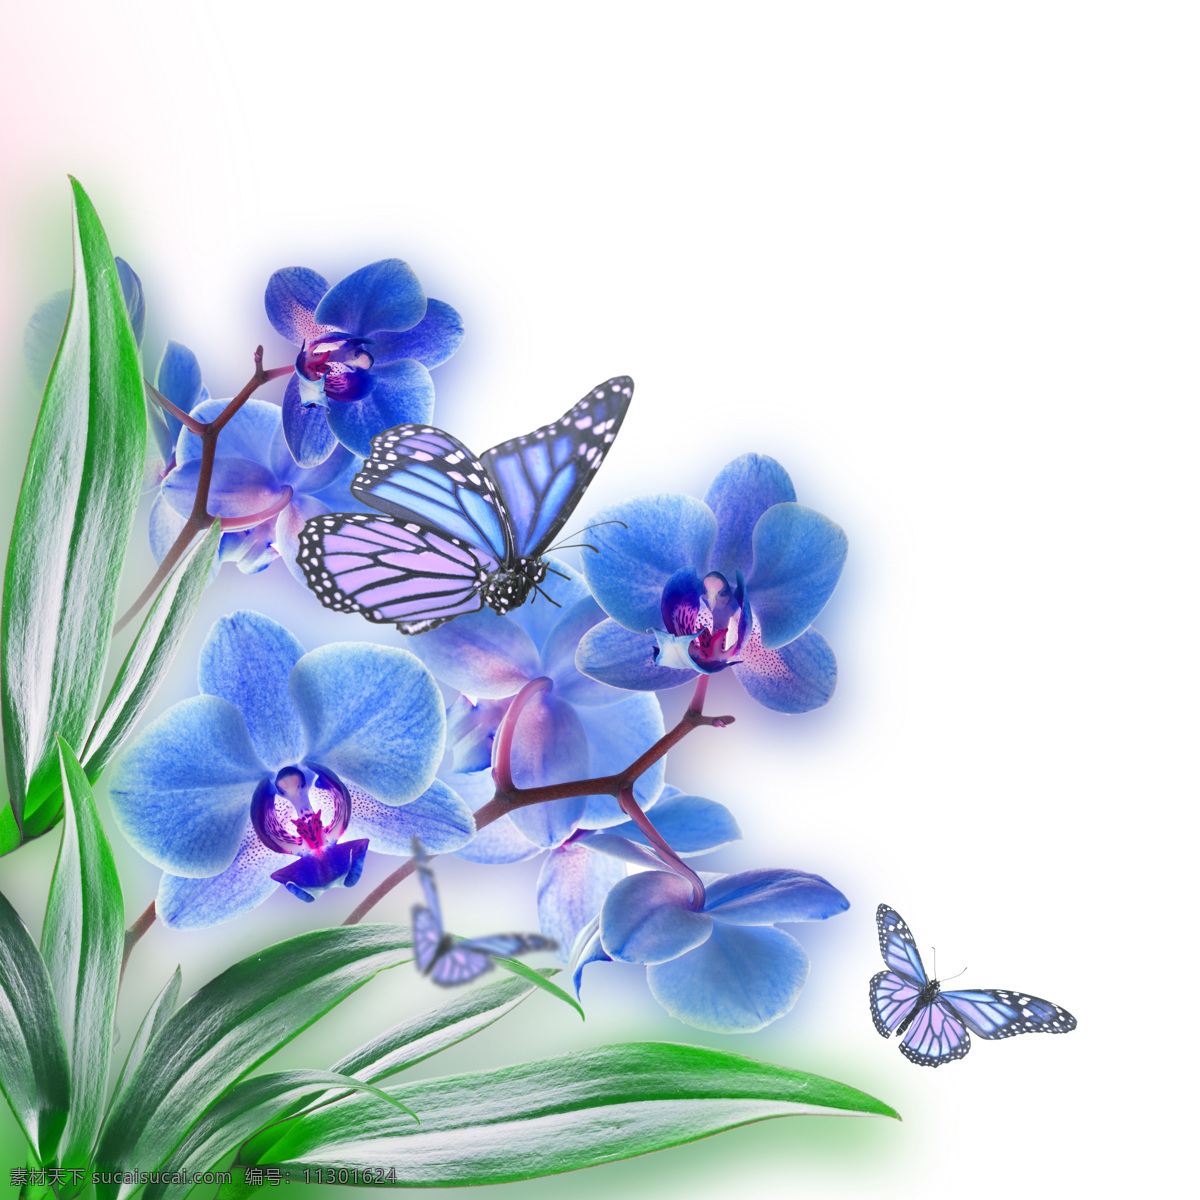 美丽 蝴蝶 恋 花朵 春天 背景 春季 鲜花 娇艳 花草树木 生物世界